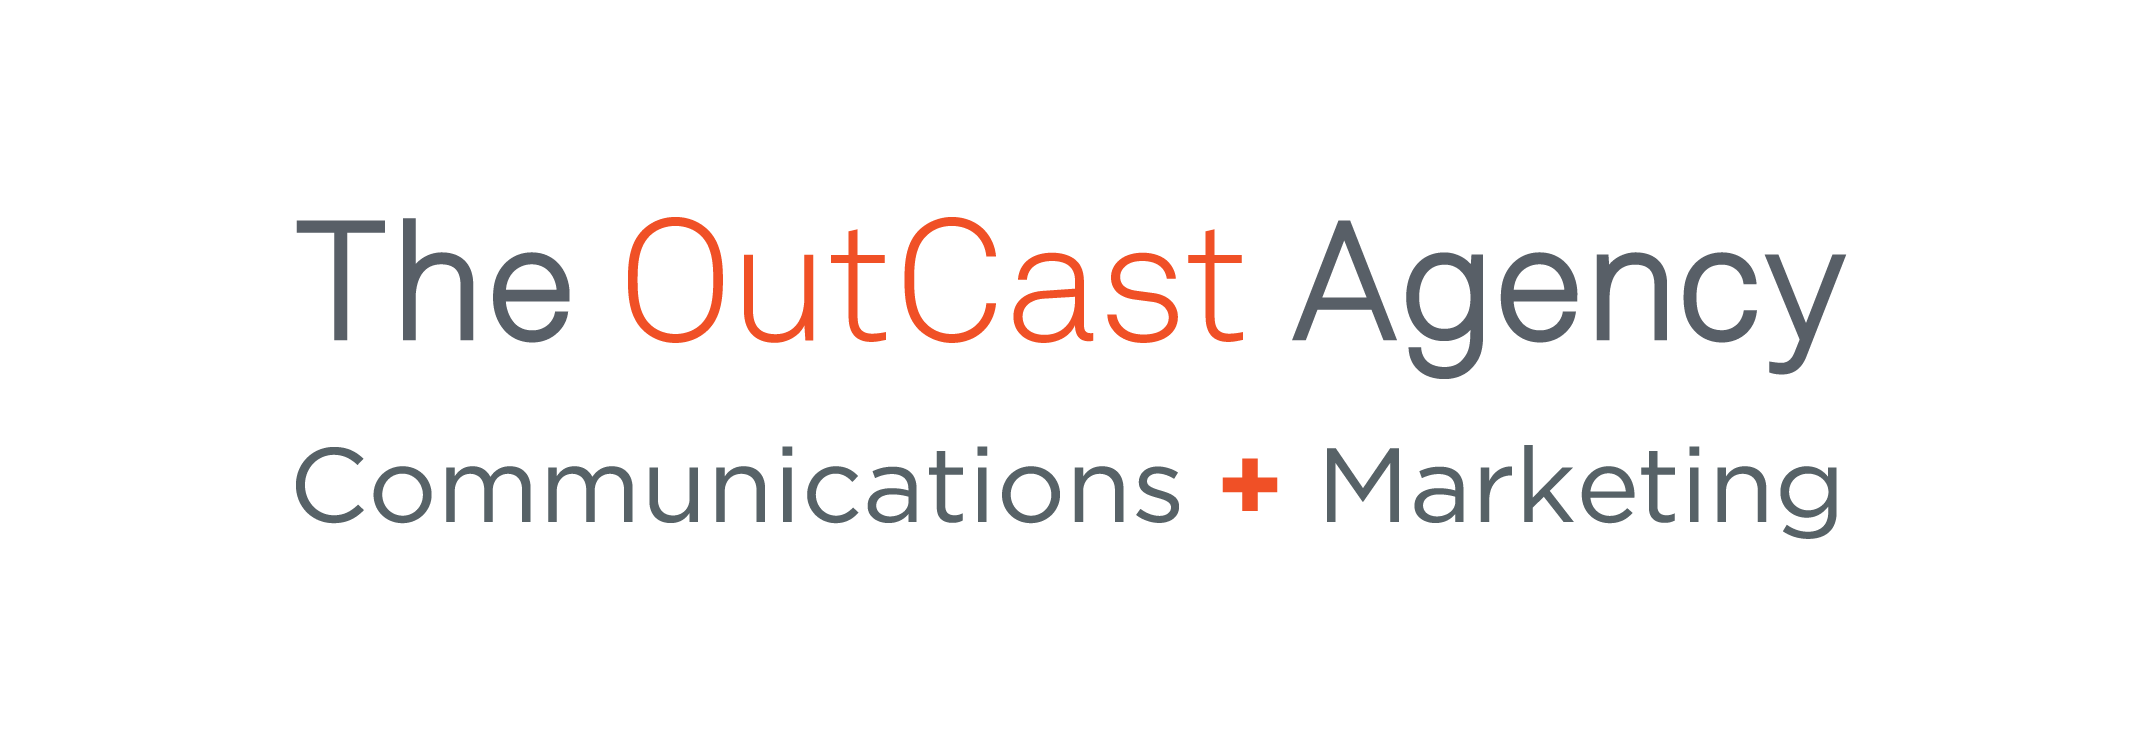 San Francisco Top SF PR Company Logo: The OutCast Agency